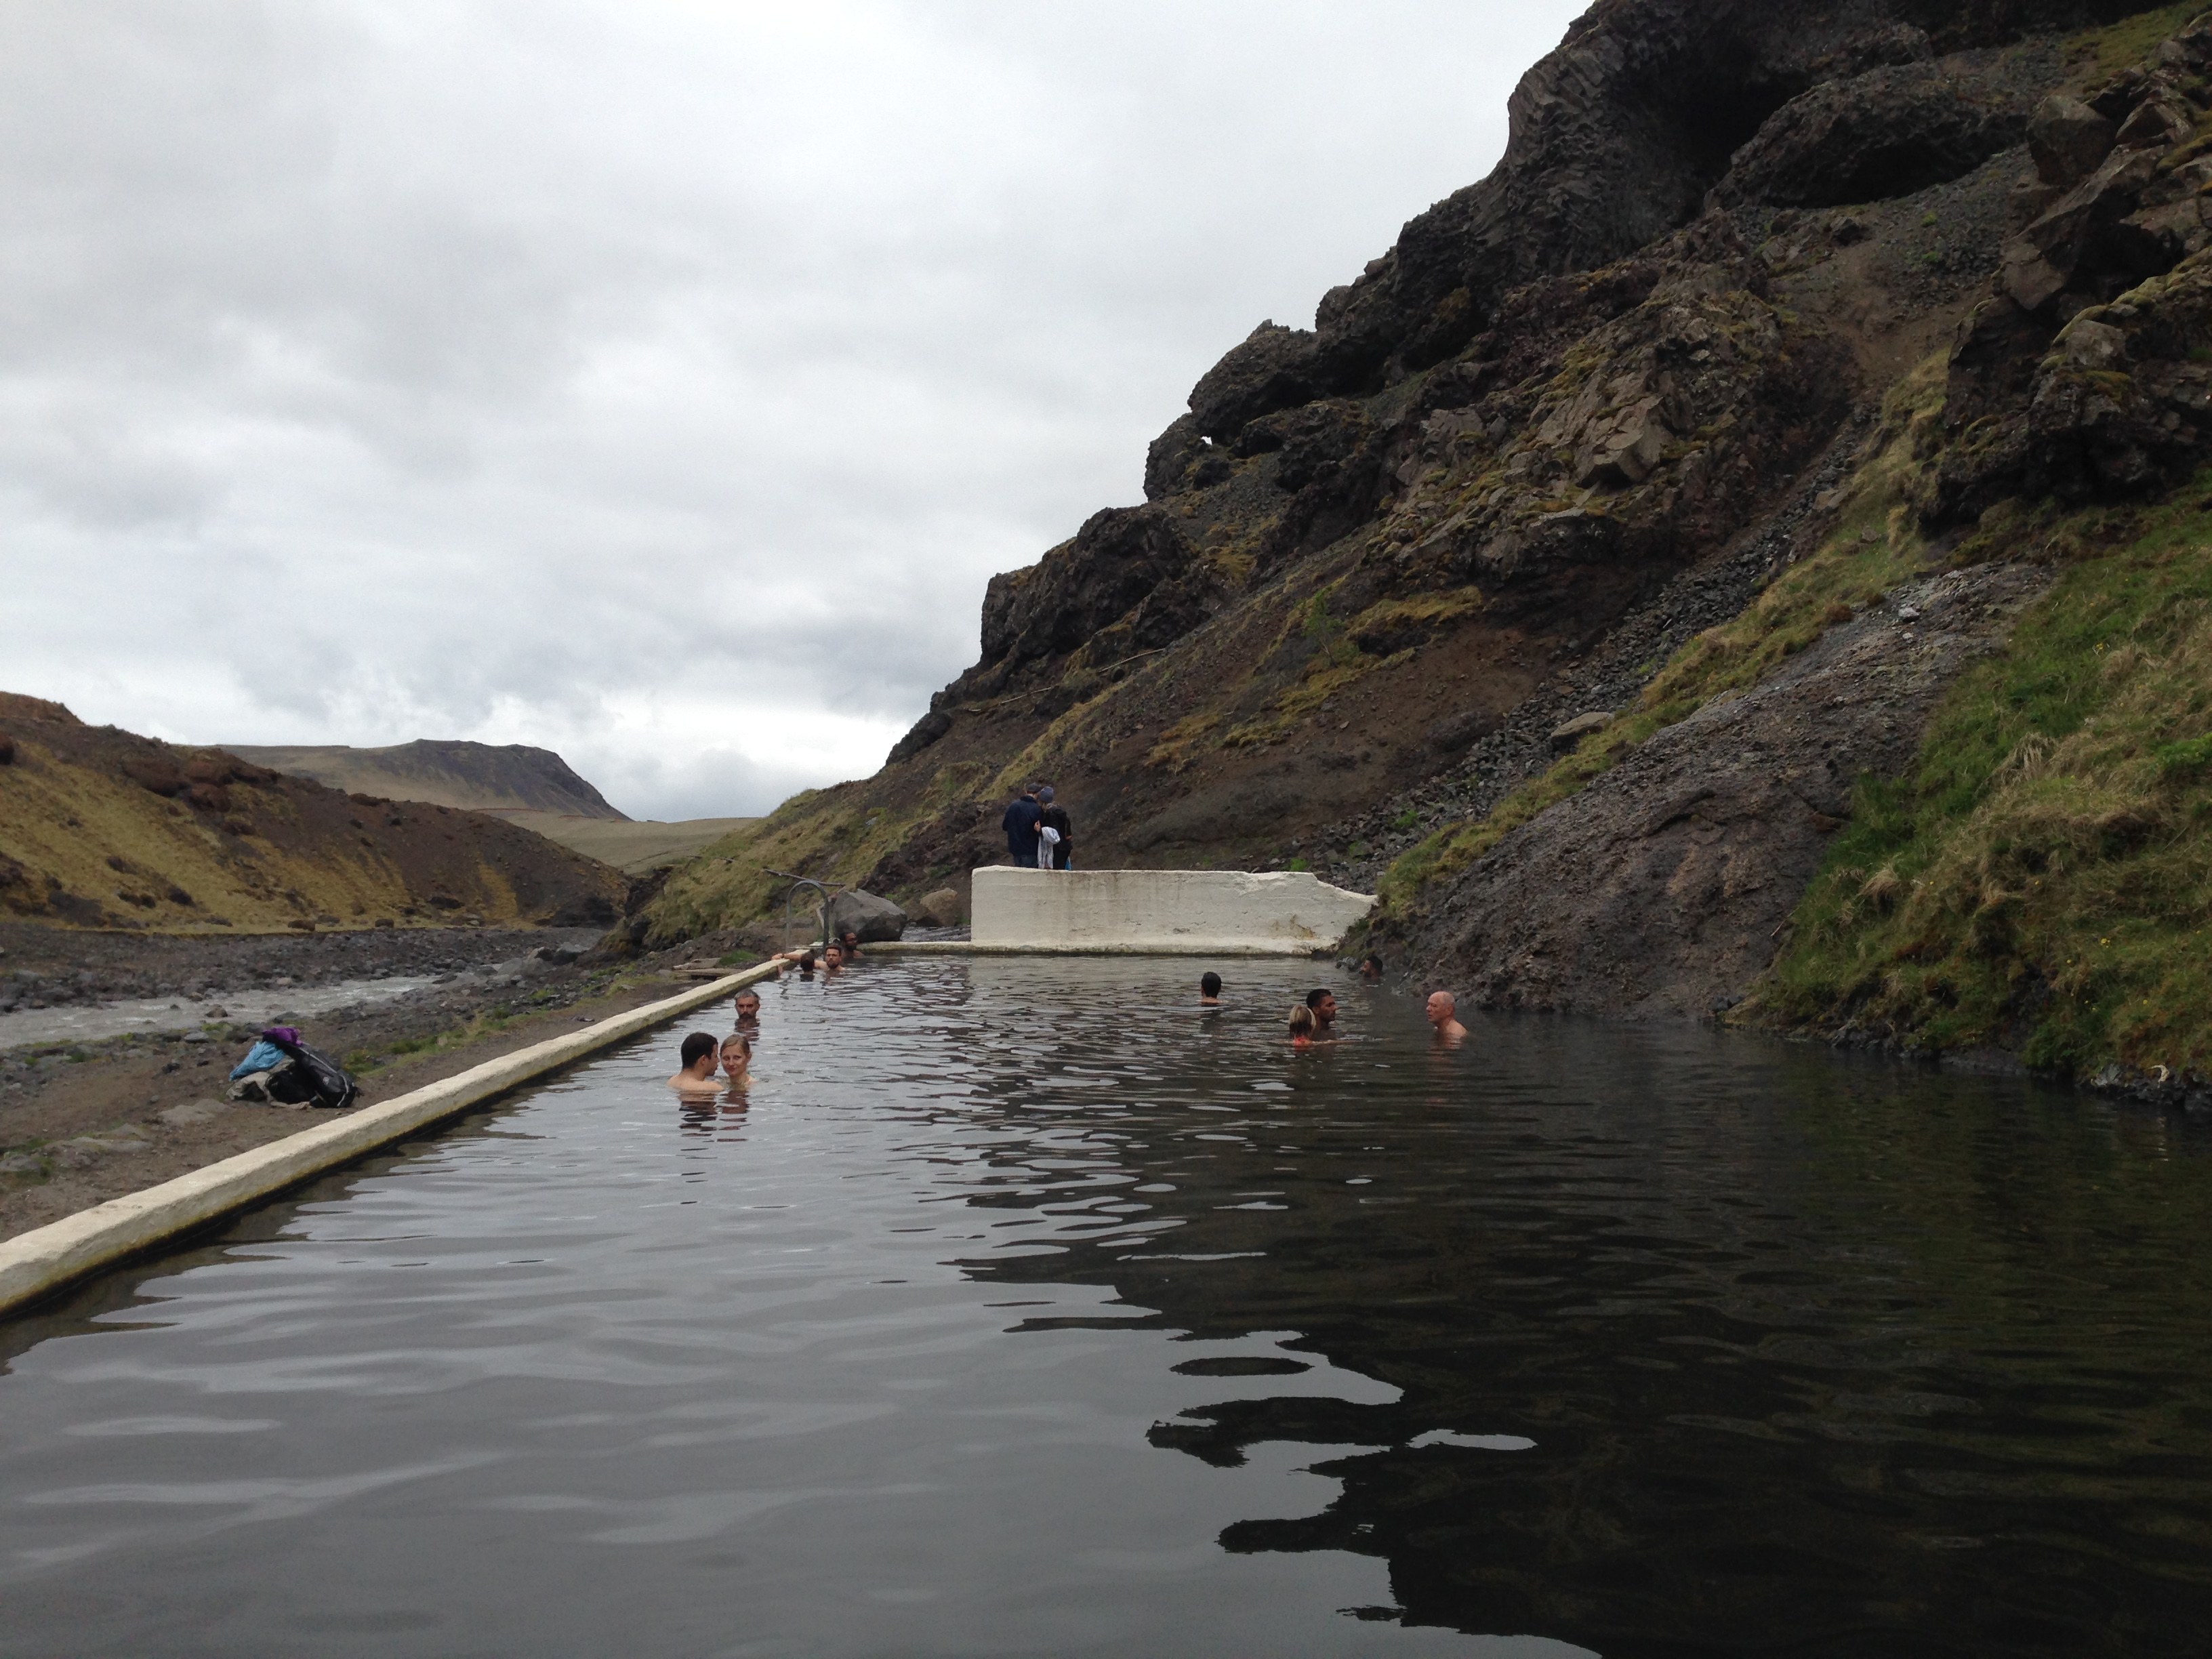 Seljavallalaug Islande piscine montagne paysage